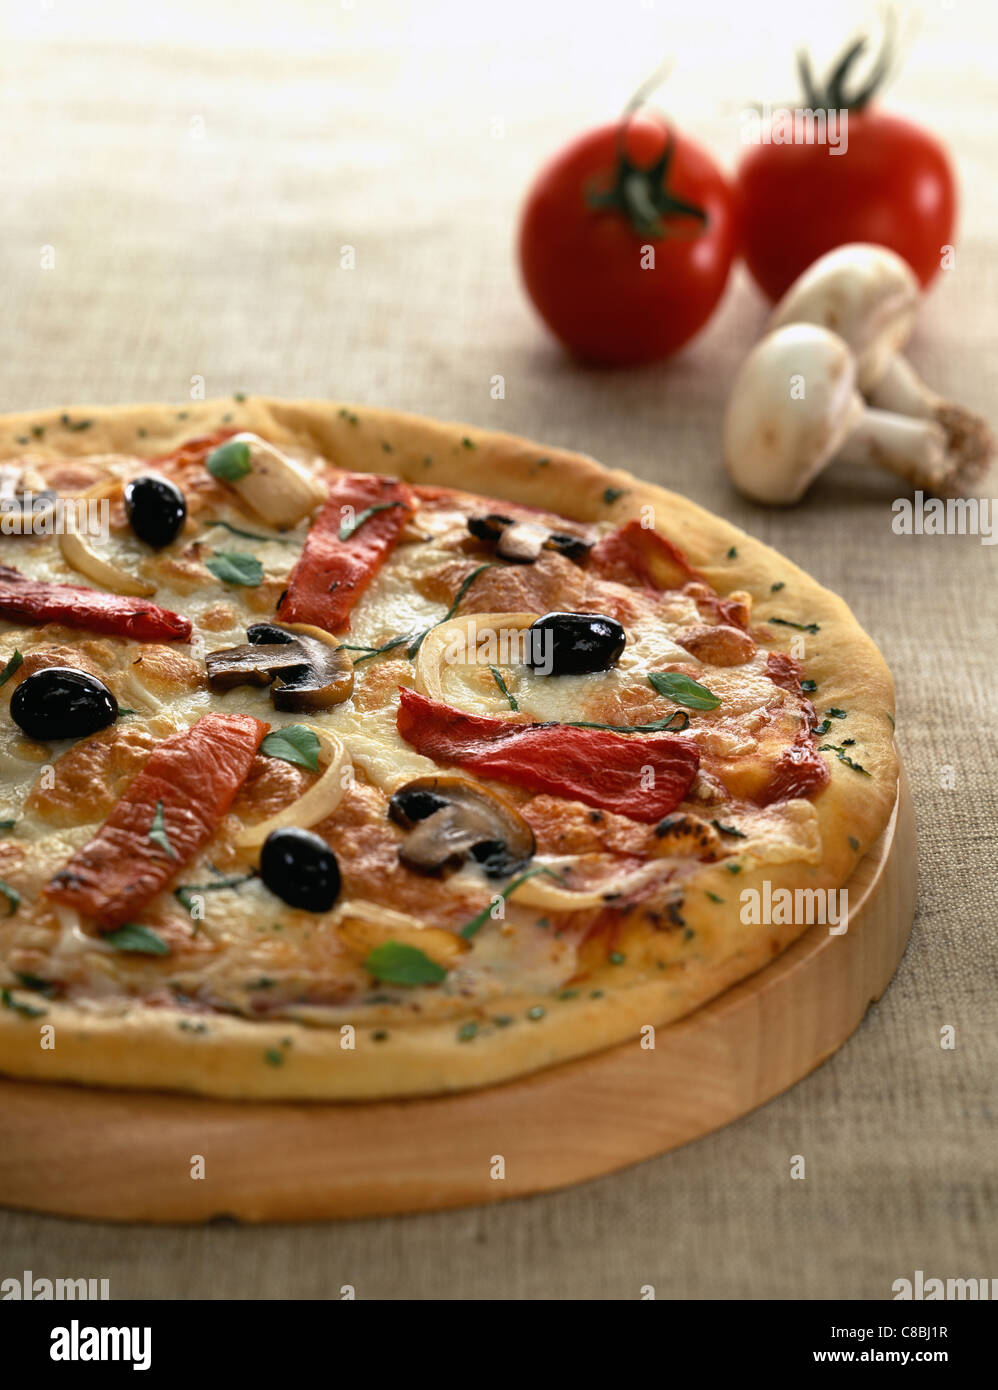 tomato and button mushroom pizza Stock Photo